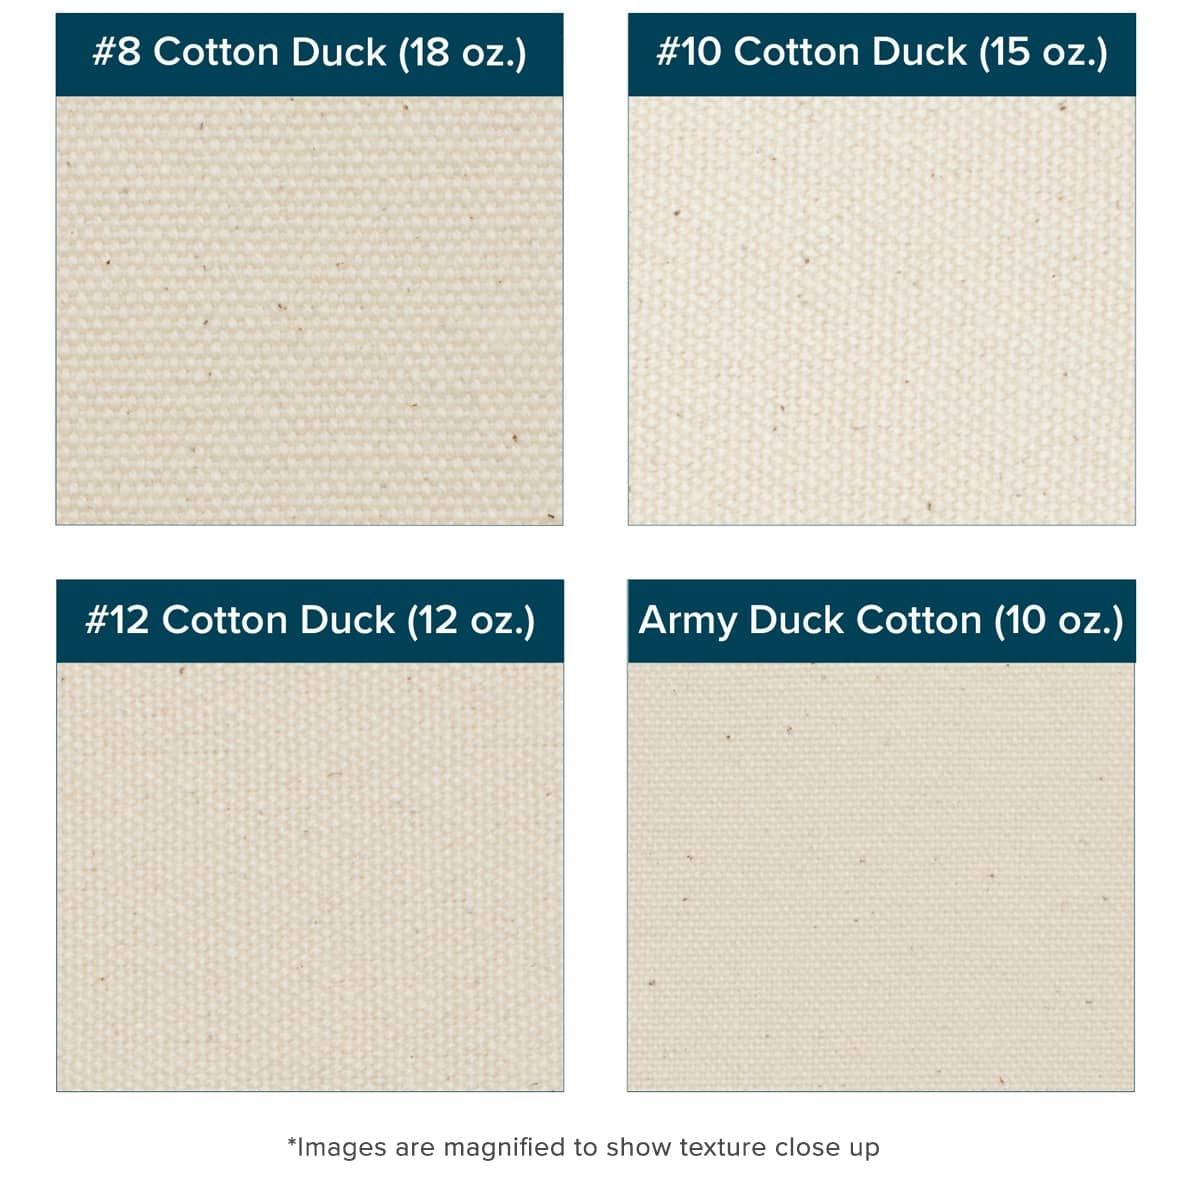 Unprimed Cotton Duck #10 Blanket (15 oz.) 120" x 6 Yards - Uniform Texture